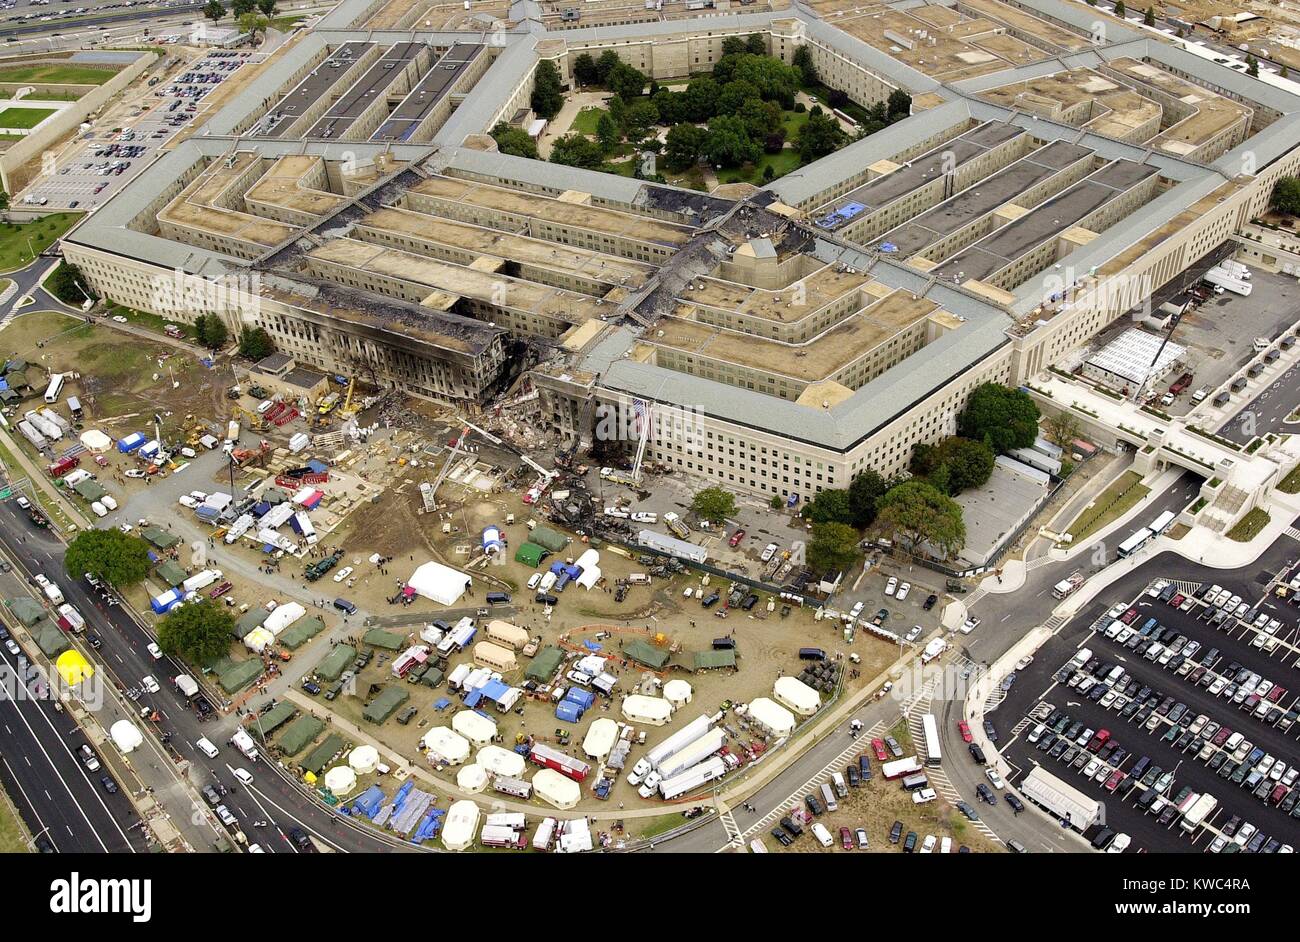 9//11 Attacks Pentagon Aerial PHOTO Rescue Crews Flight 77 Plane Crash Site